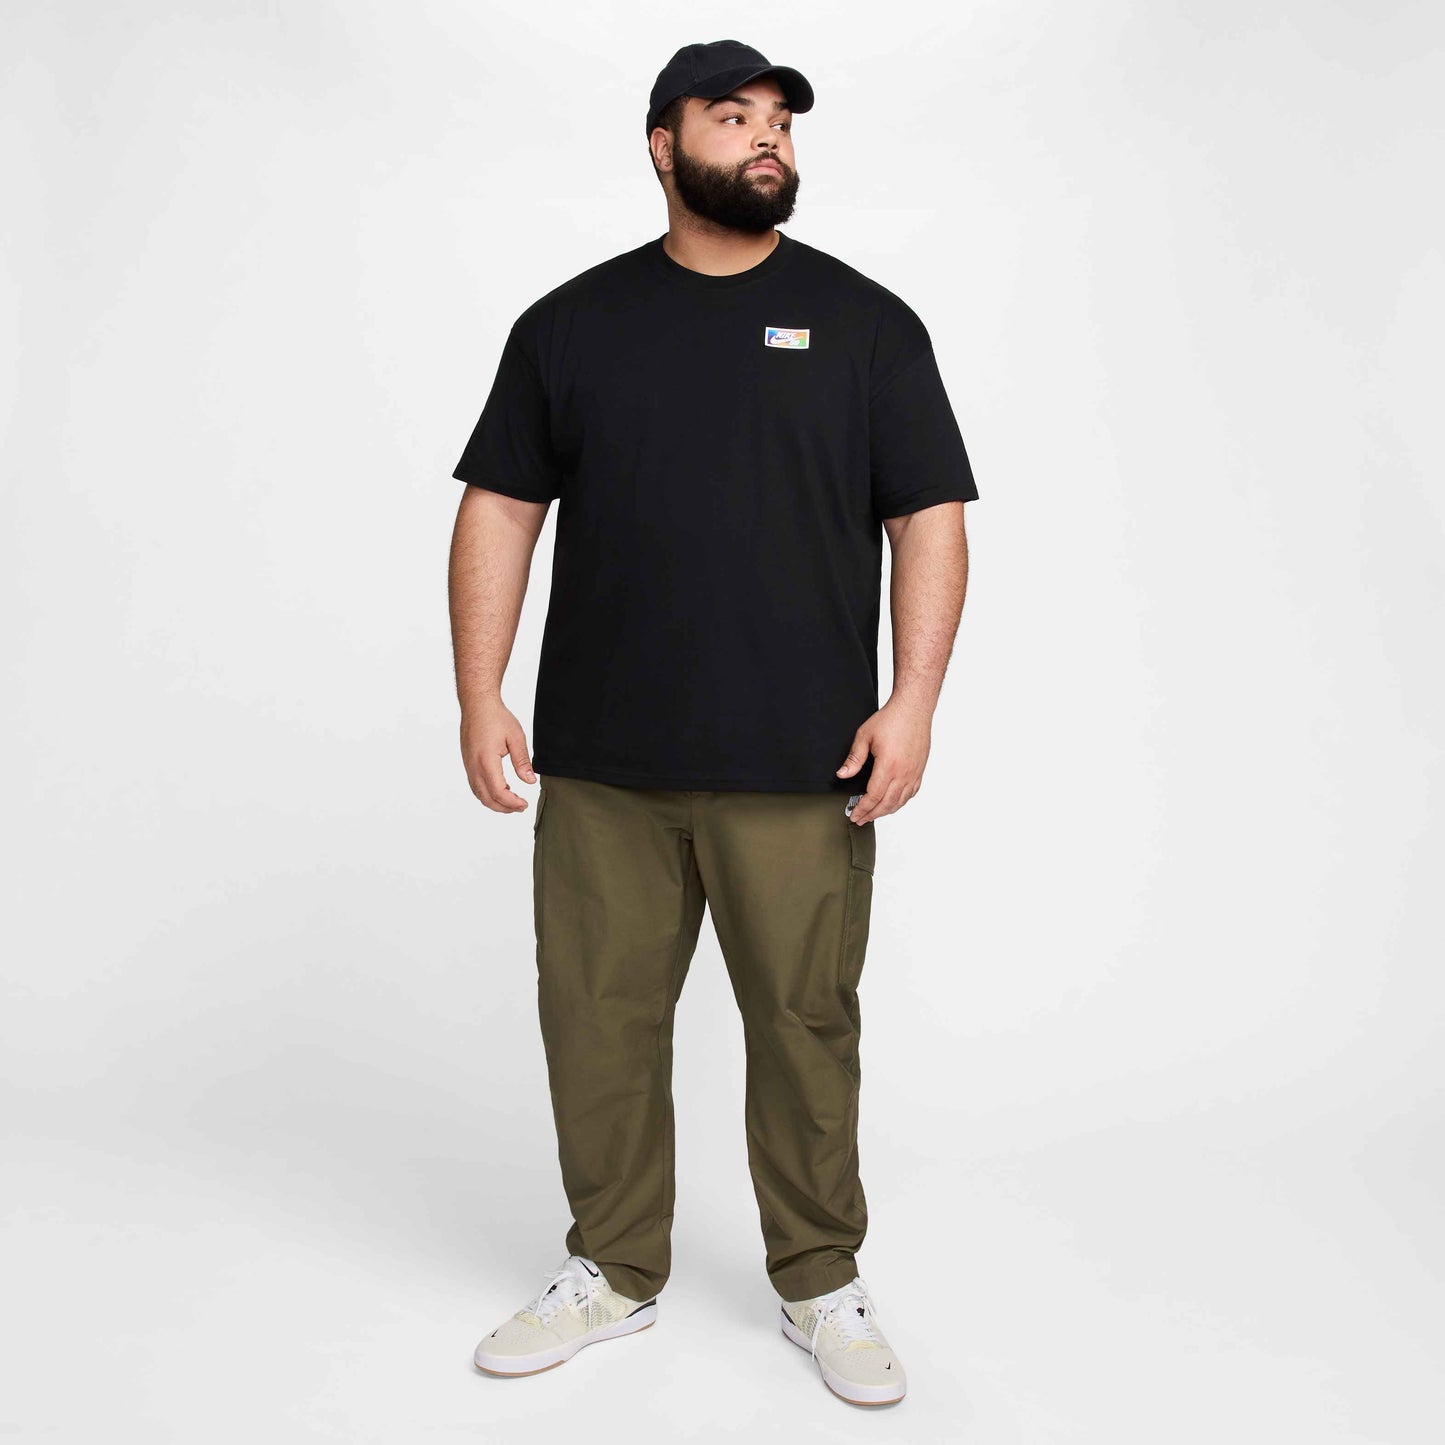 Nike SB Thumbprint T-Shirt Black